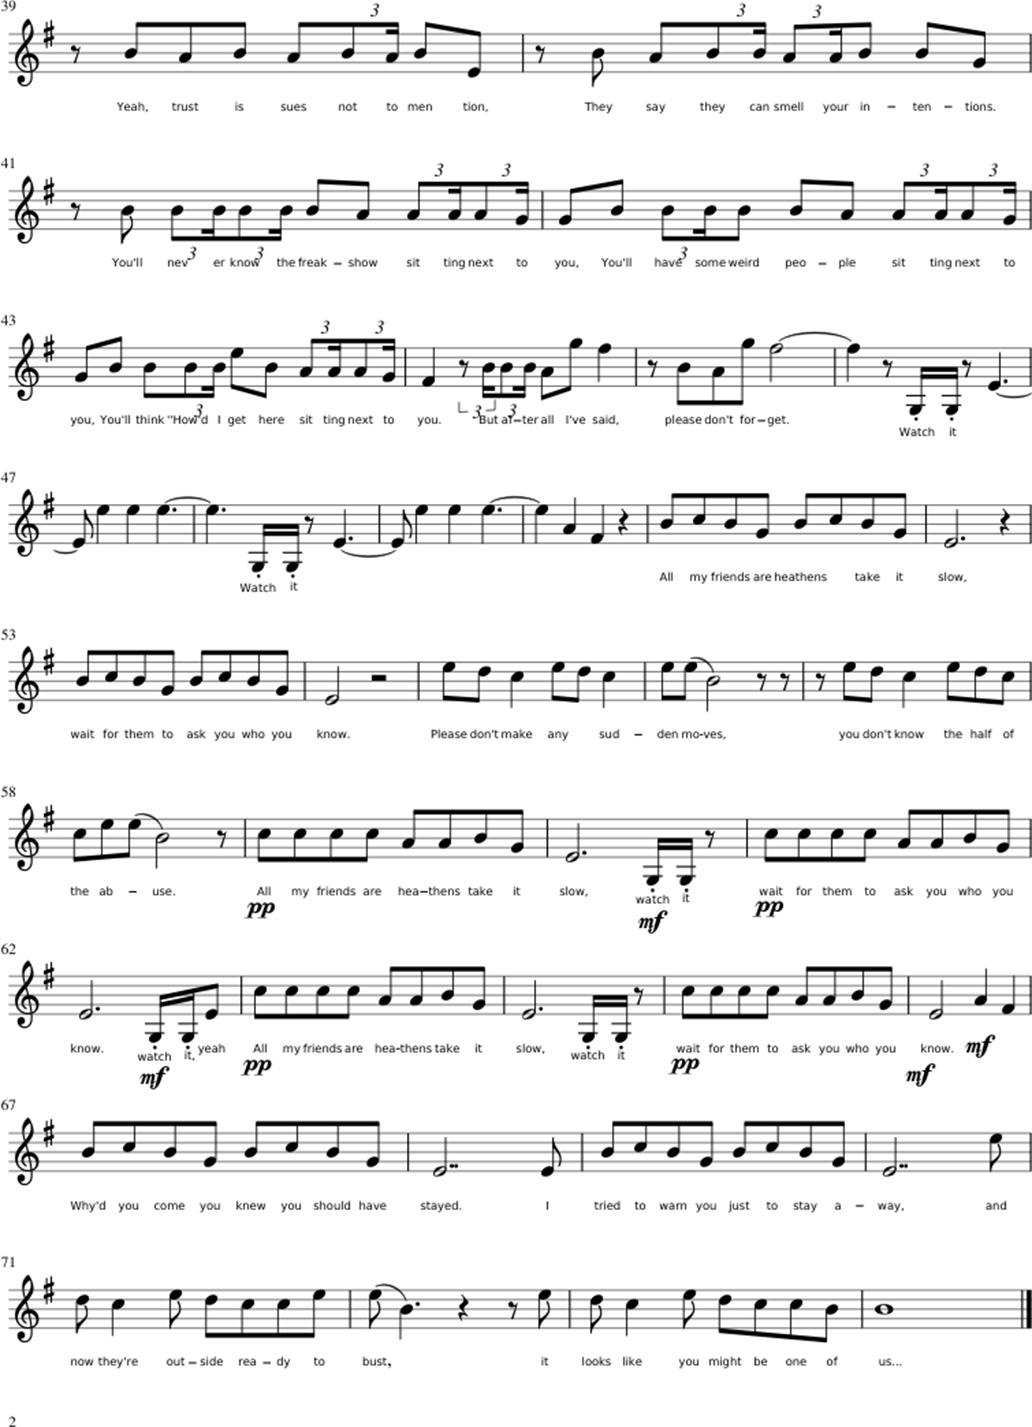 Heathens sheet music notes 2